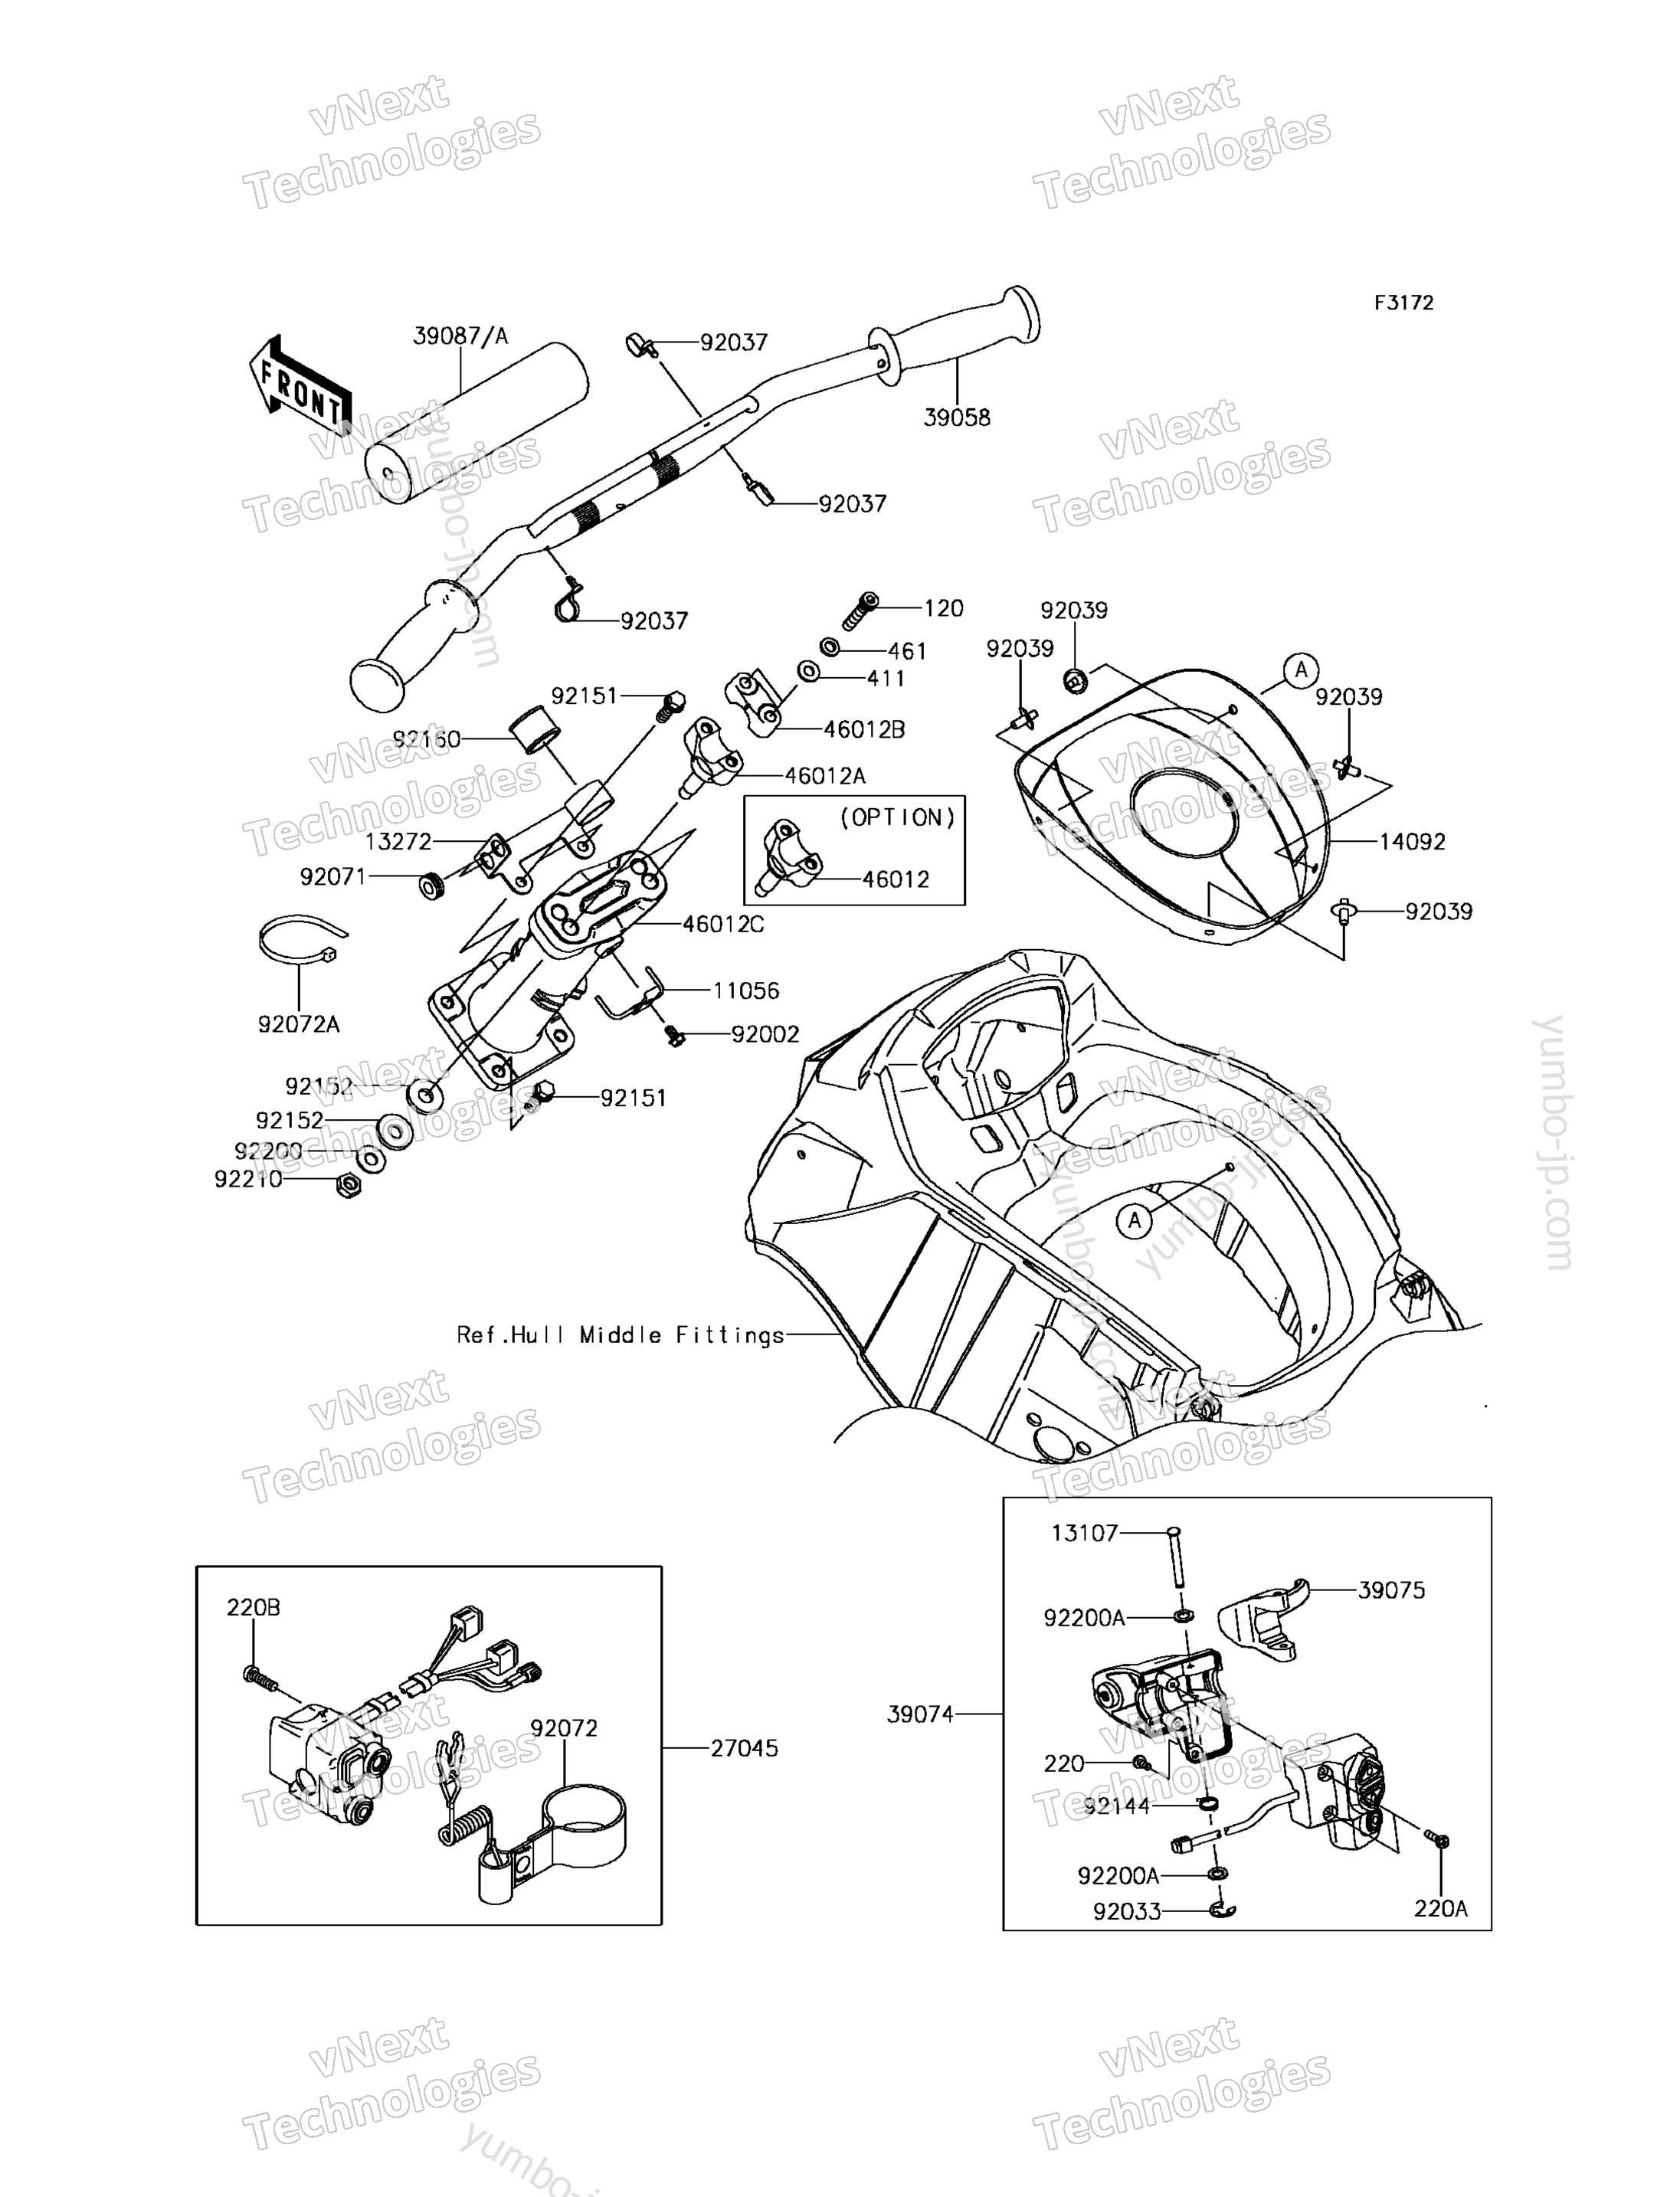 Румпель (рукоятка управления) для гидроциклов KAWASAKI JET SKI ULTRA 310R (JT1500NEF) 2014 г.